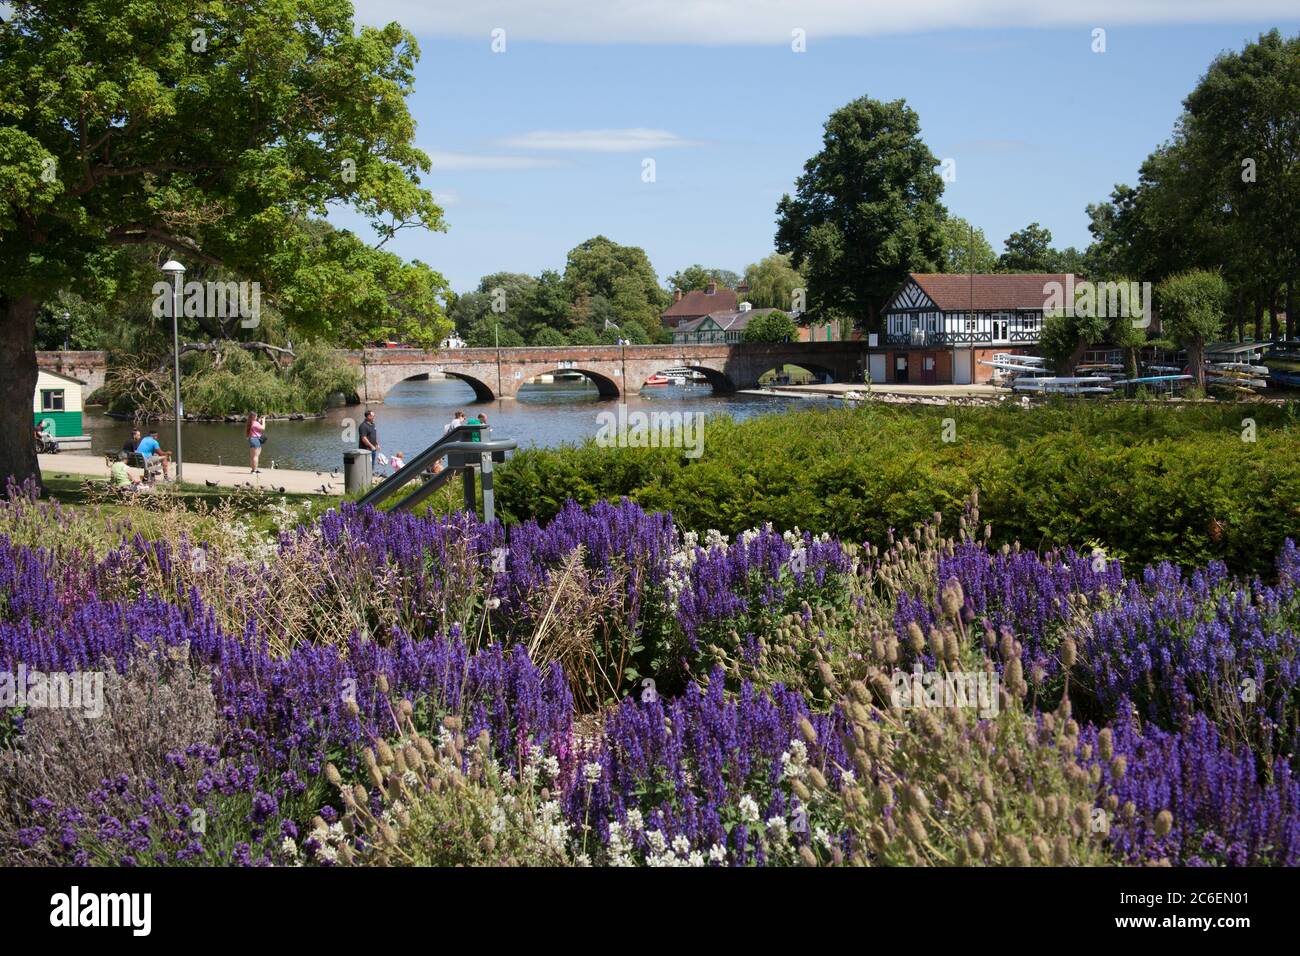 Blick auf Bridge Foot über den Fluss Avon in Stratford-upon-Avon in Warwickshire in Großbritannien am 22. Juni 2020 Stockfoto